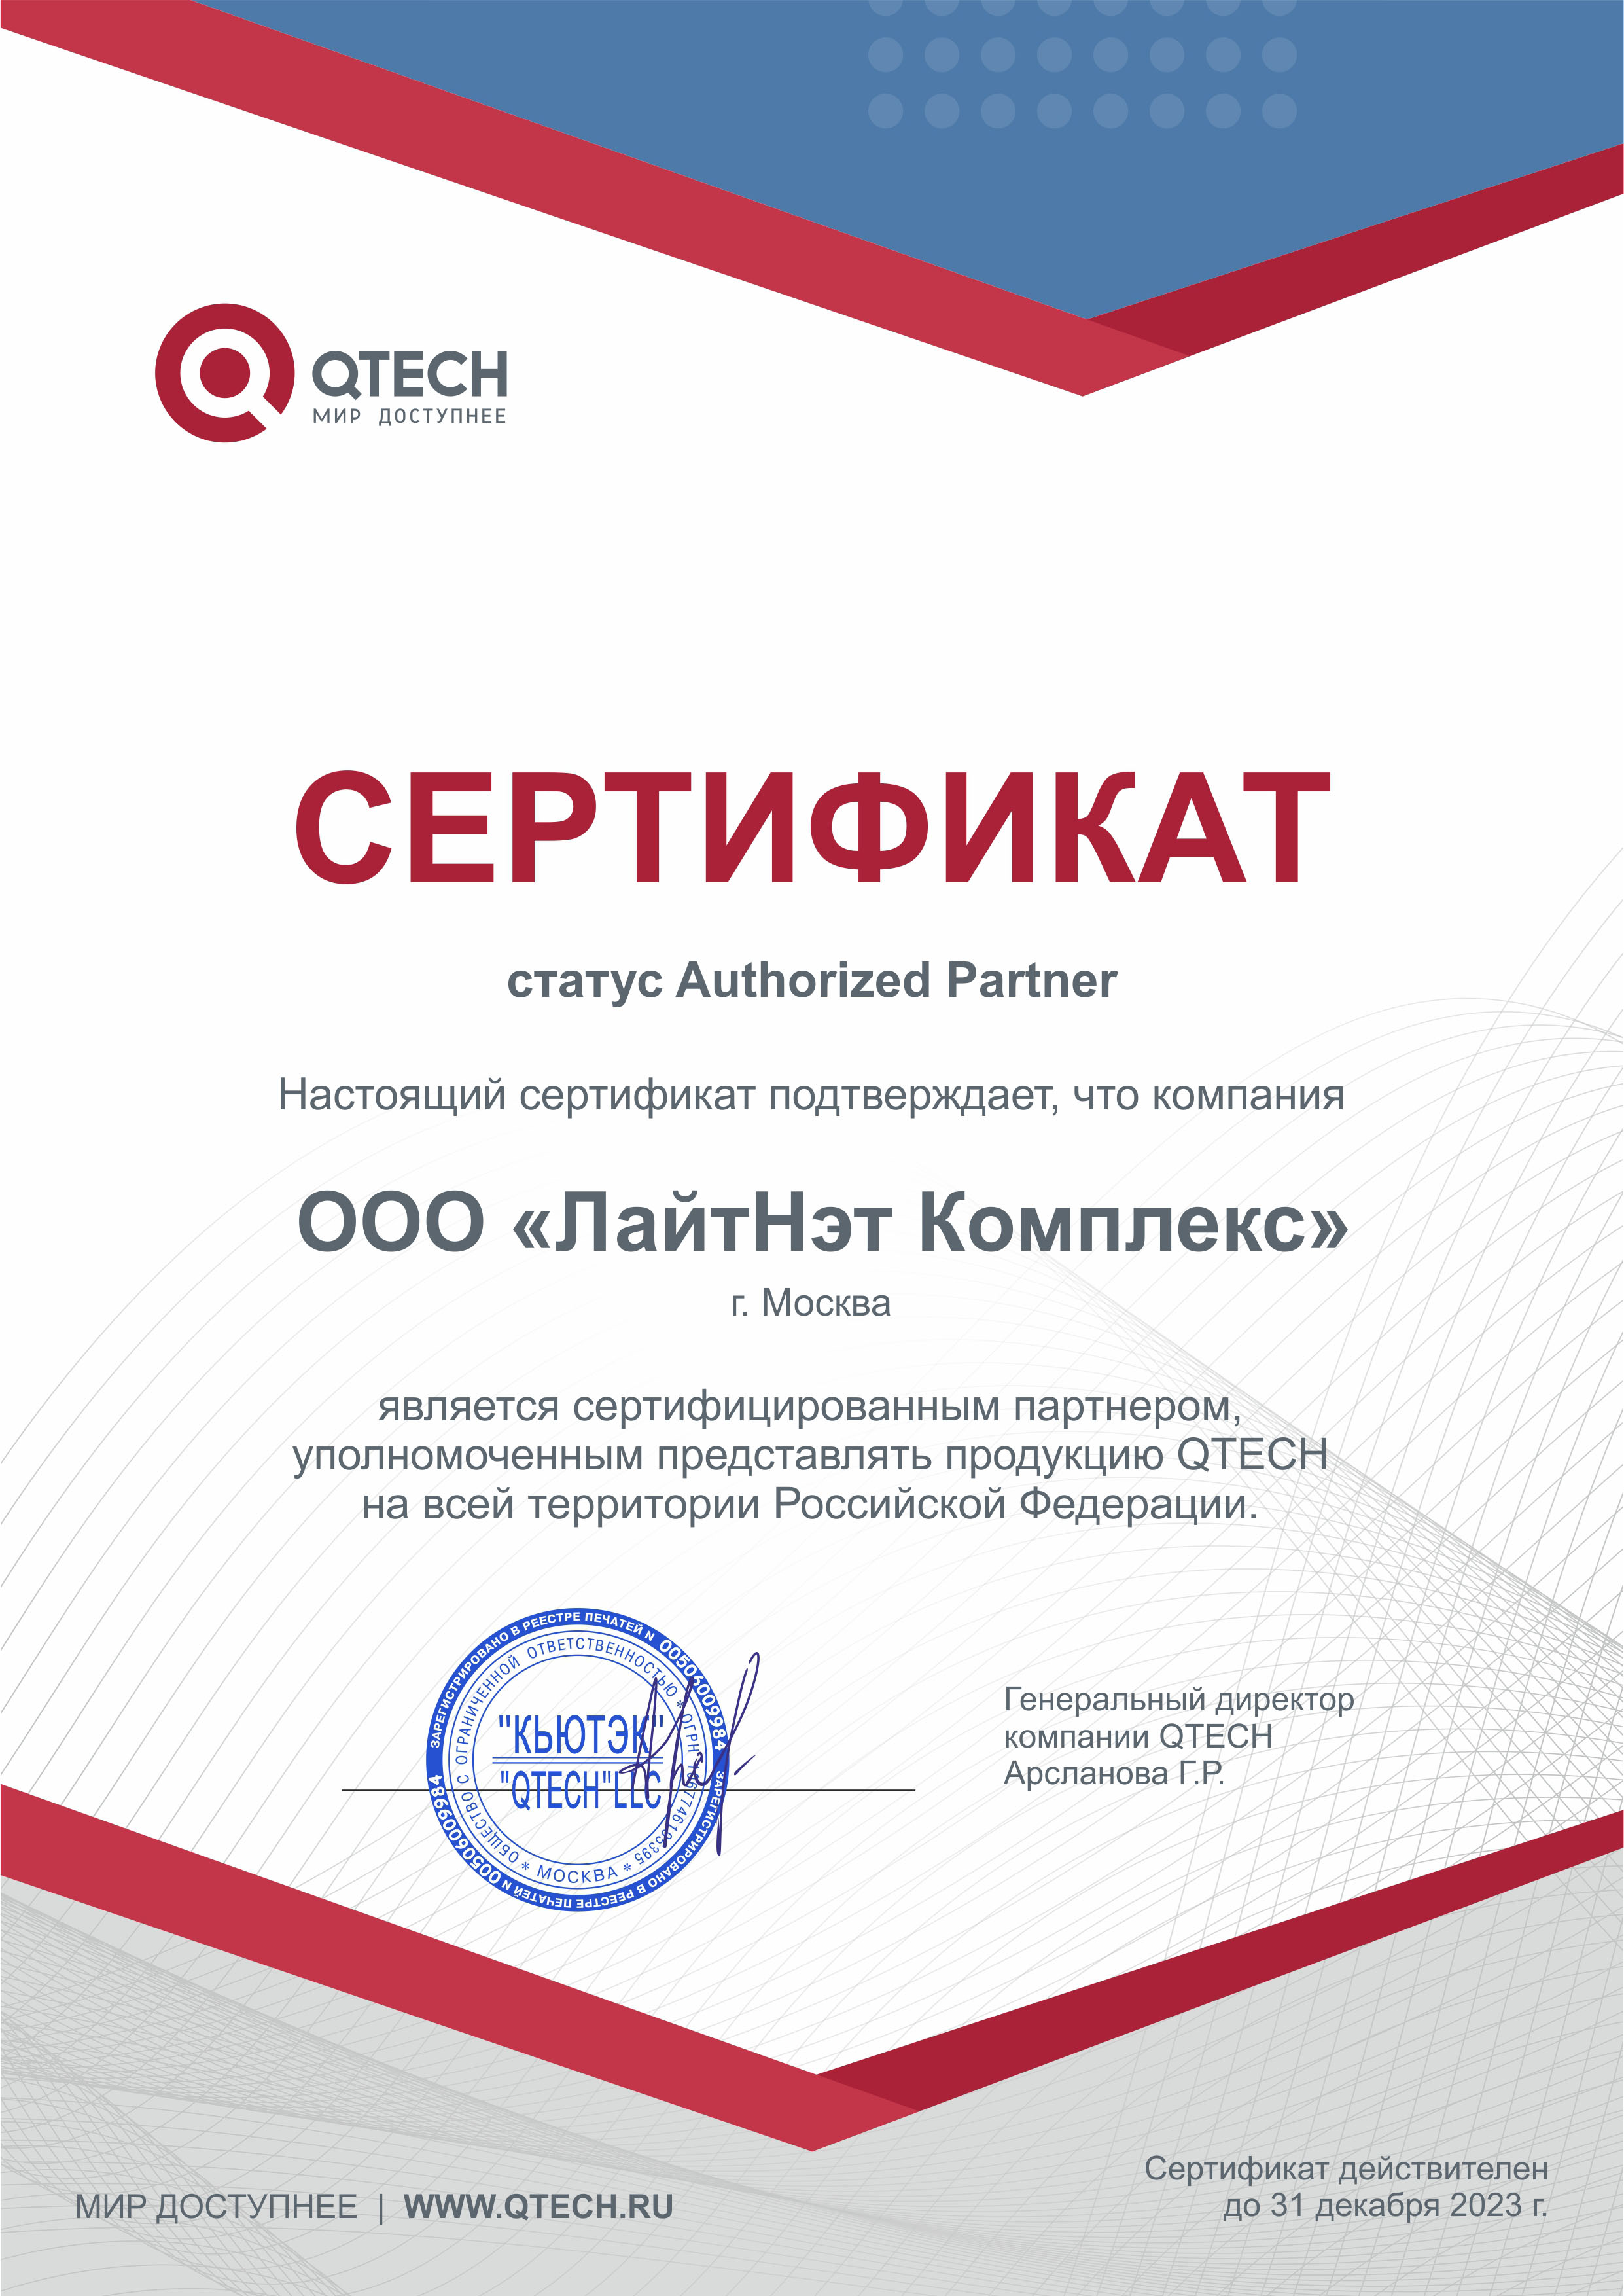 QTECH - Авторизованный партнер